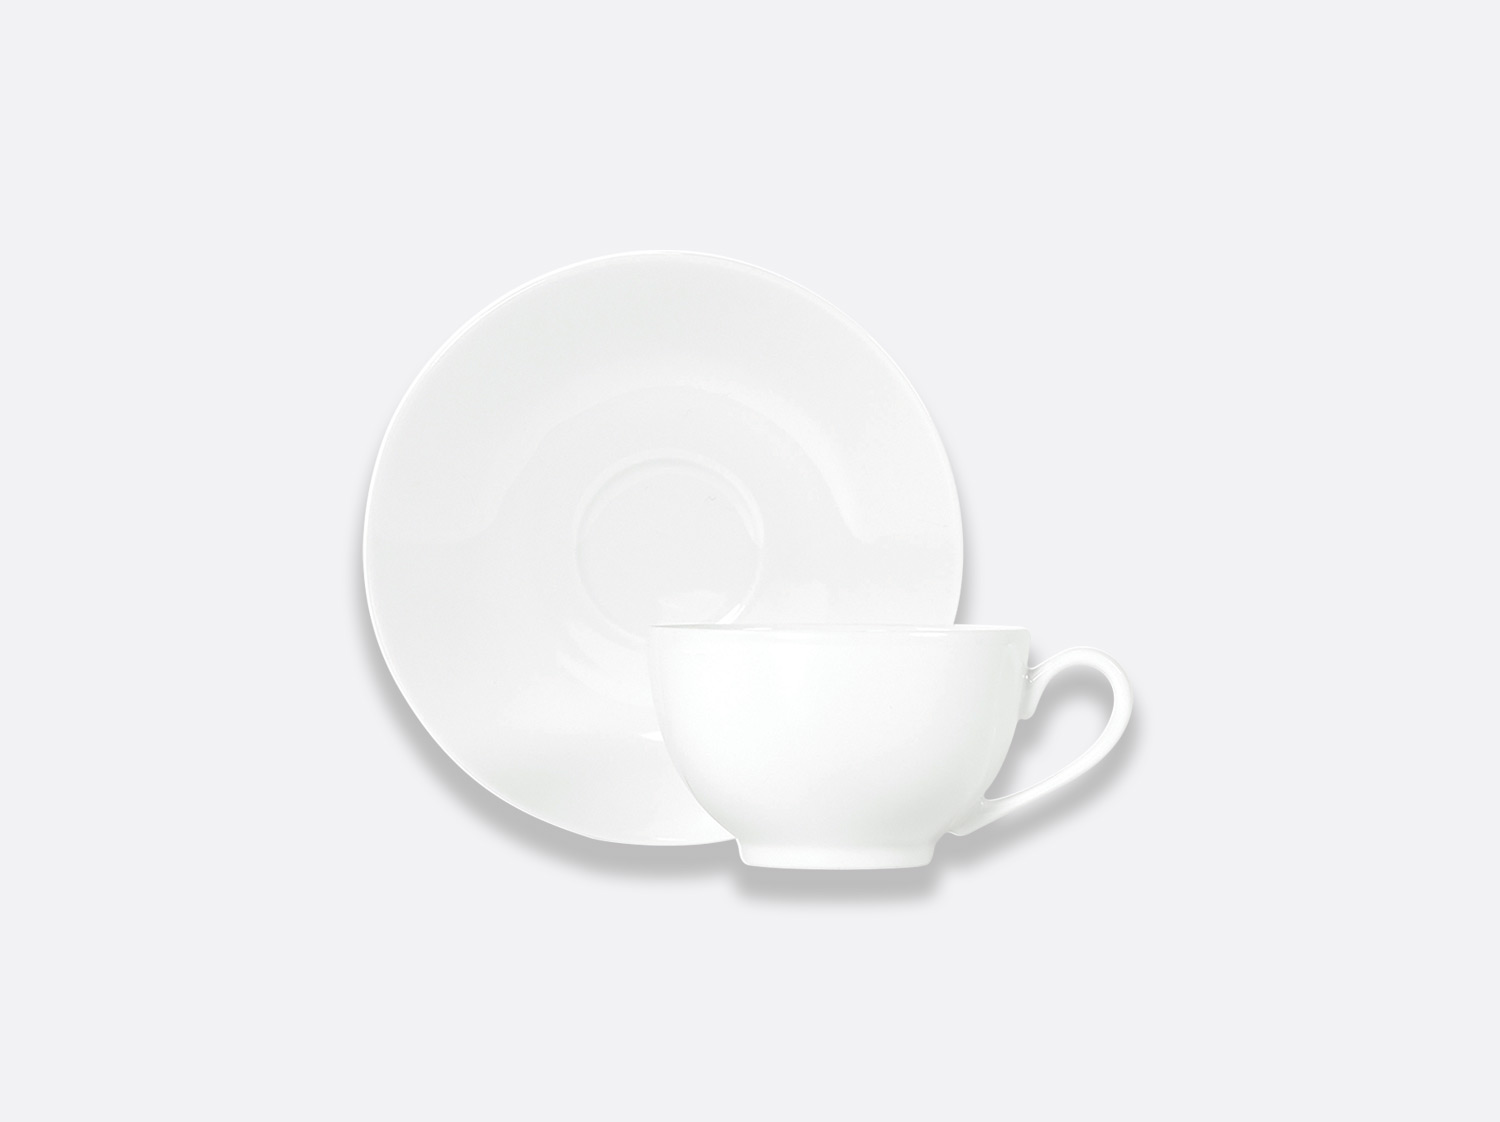 China Boule teacup and saucer 13 cl of the collection Boule blanc | Bernardaud